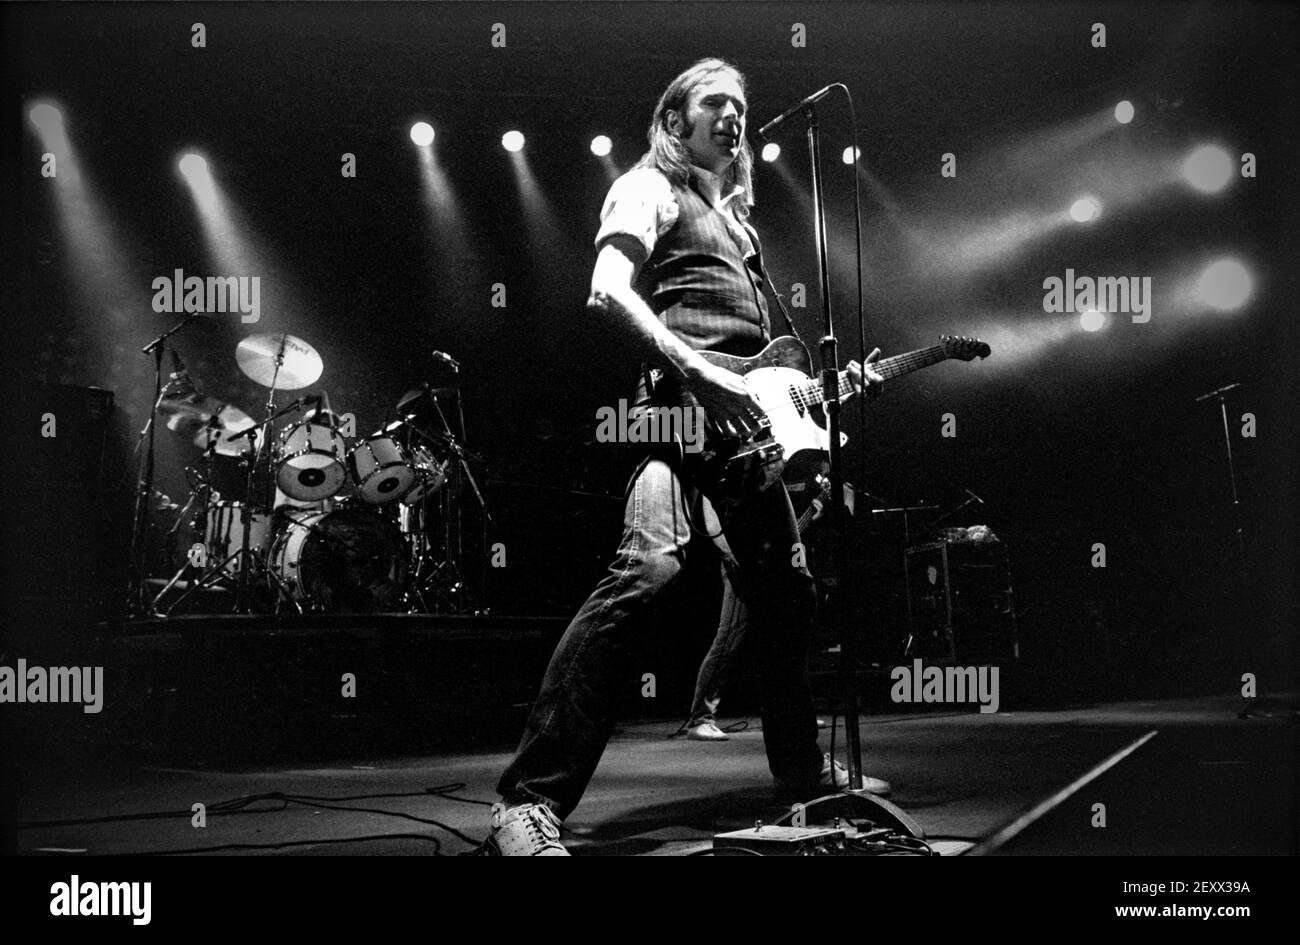 ZWOLLE, NIEDERLANDE - 08. MAI 1984: Status Quo live auf der Bühne während eines Konzerts in den Niederlanden. Stockfoto